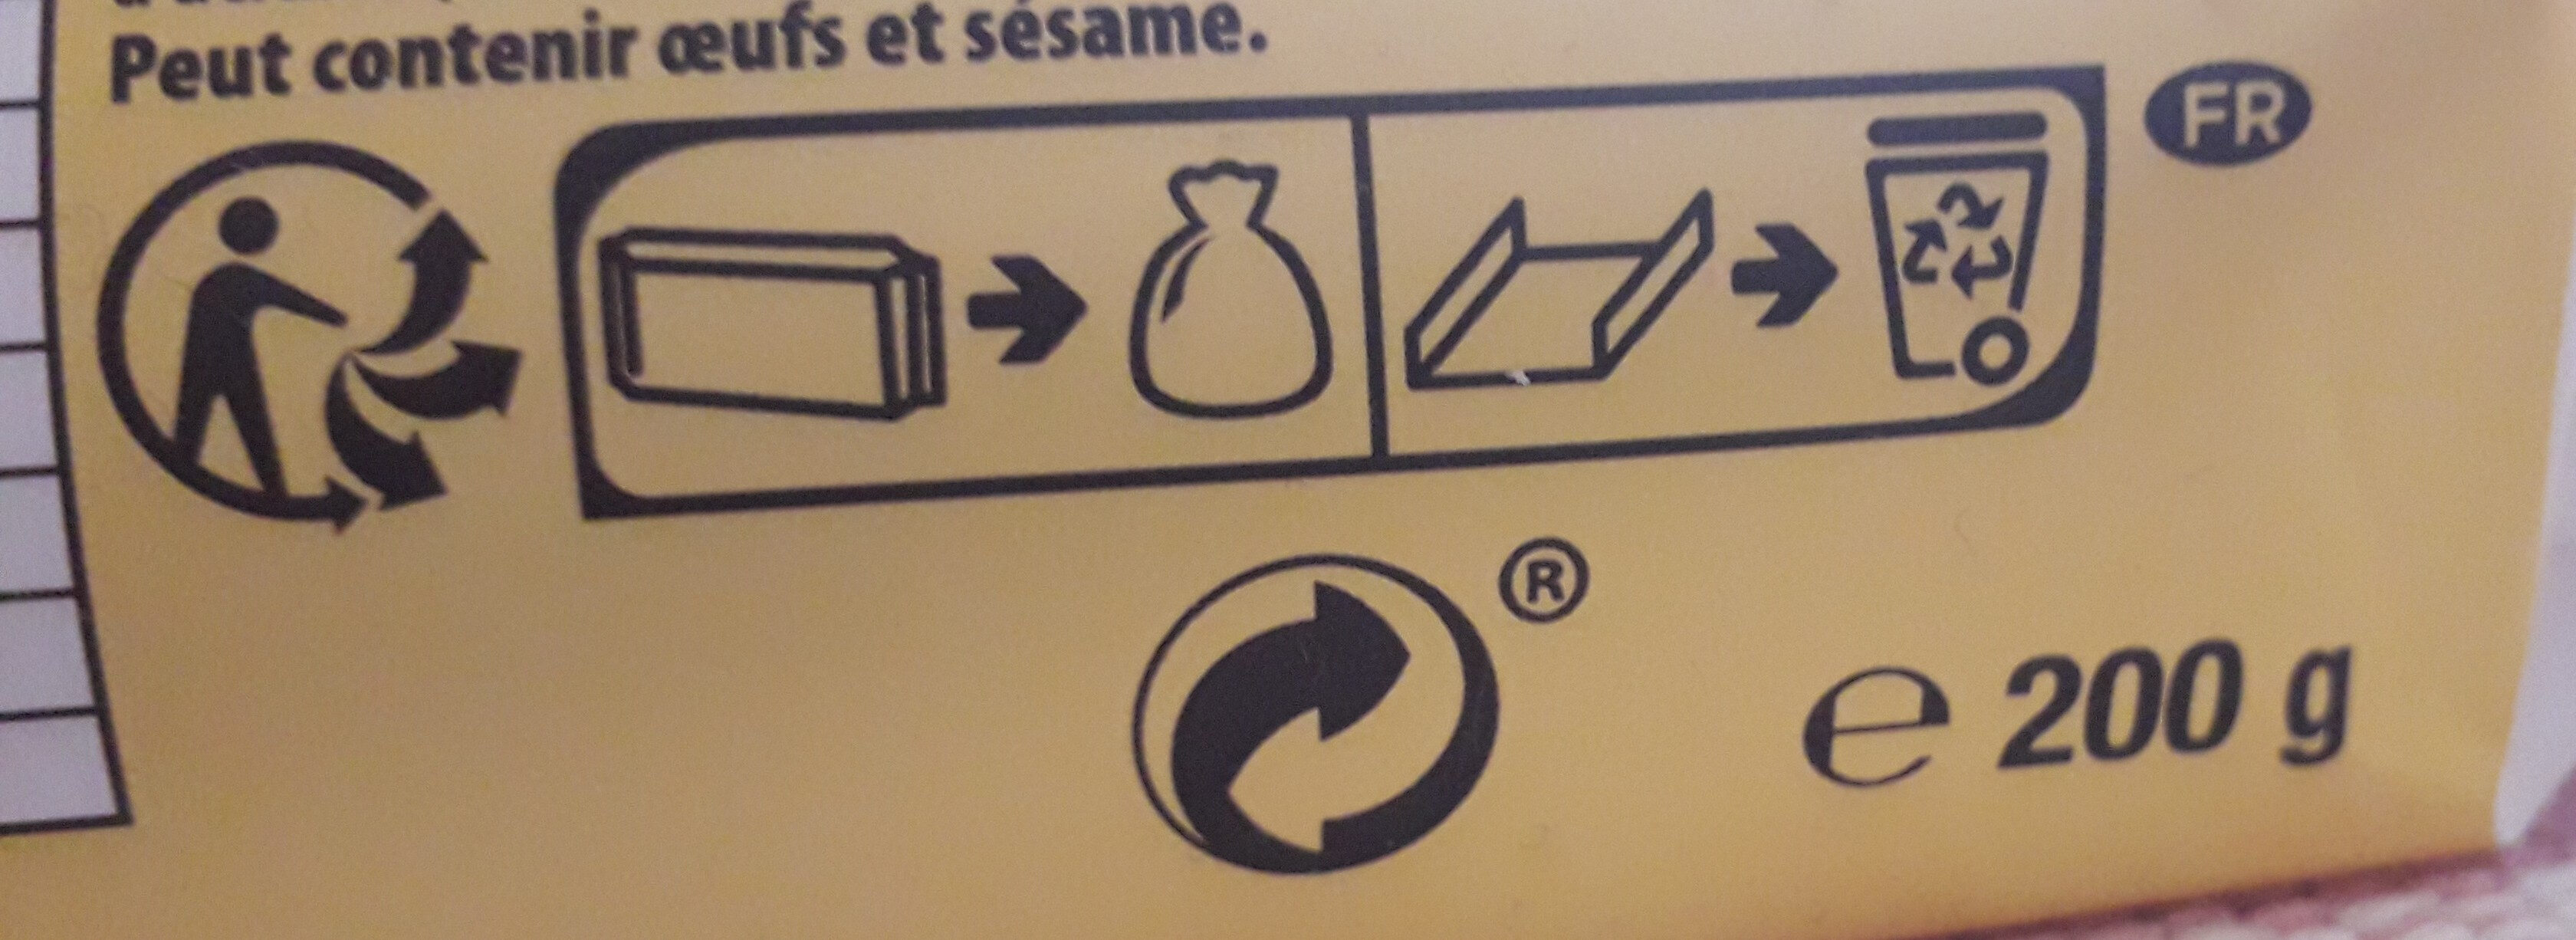 Véritable petit beurre - Instruction de recyclage et/ou informations d'emballage